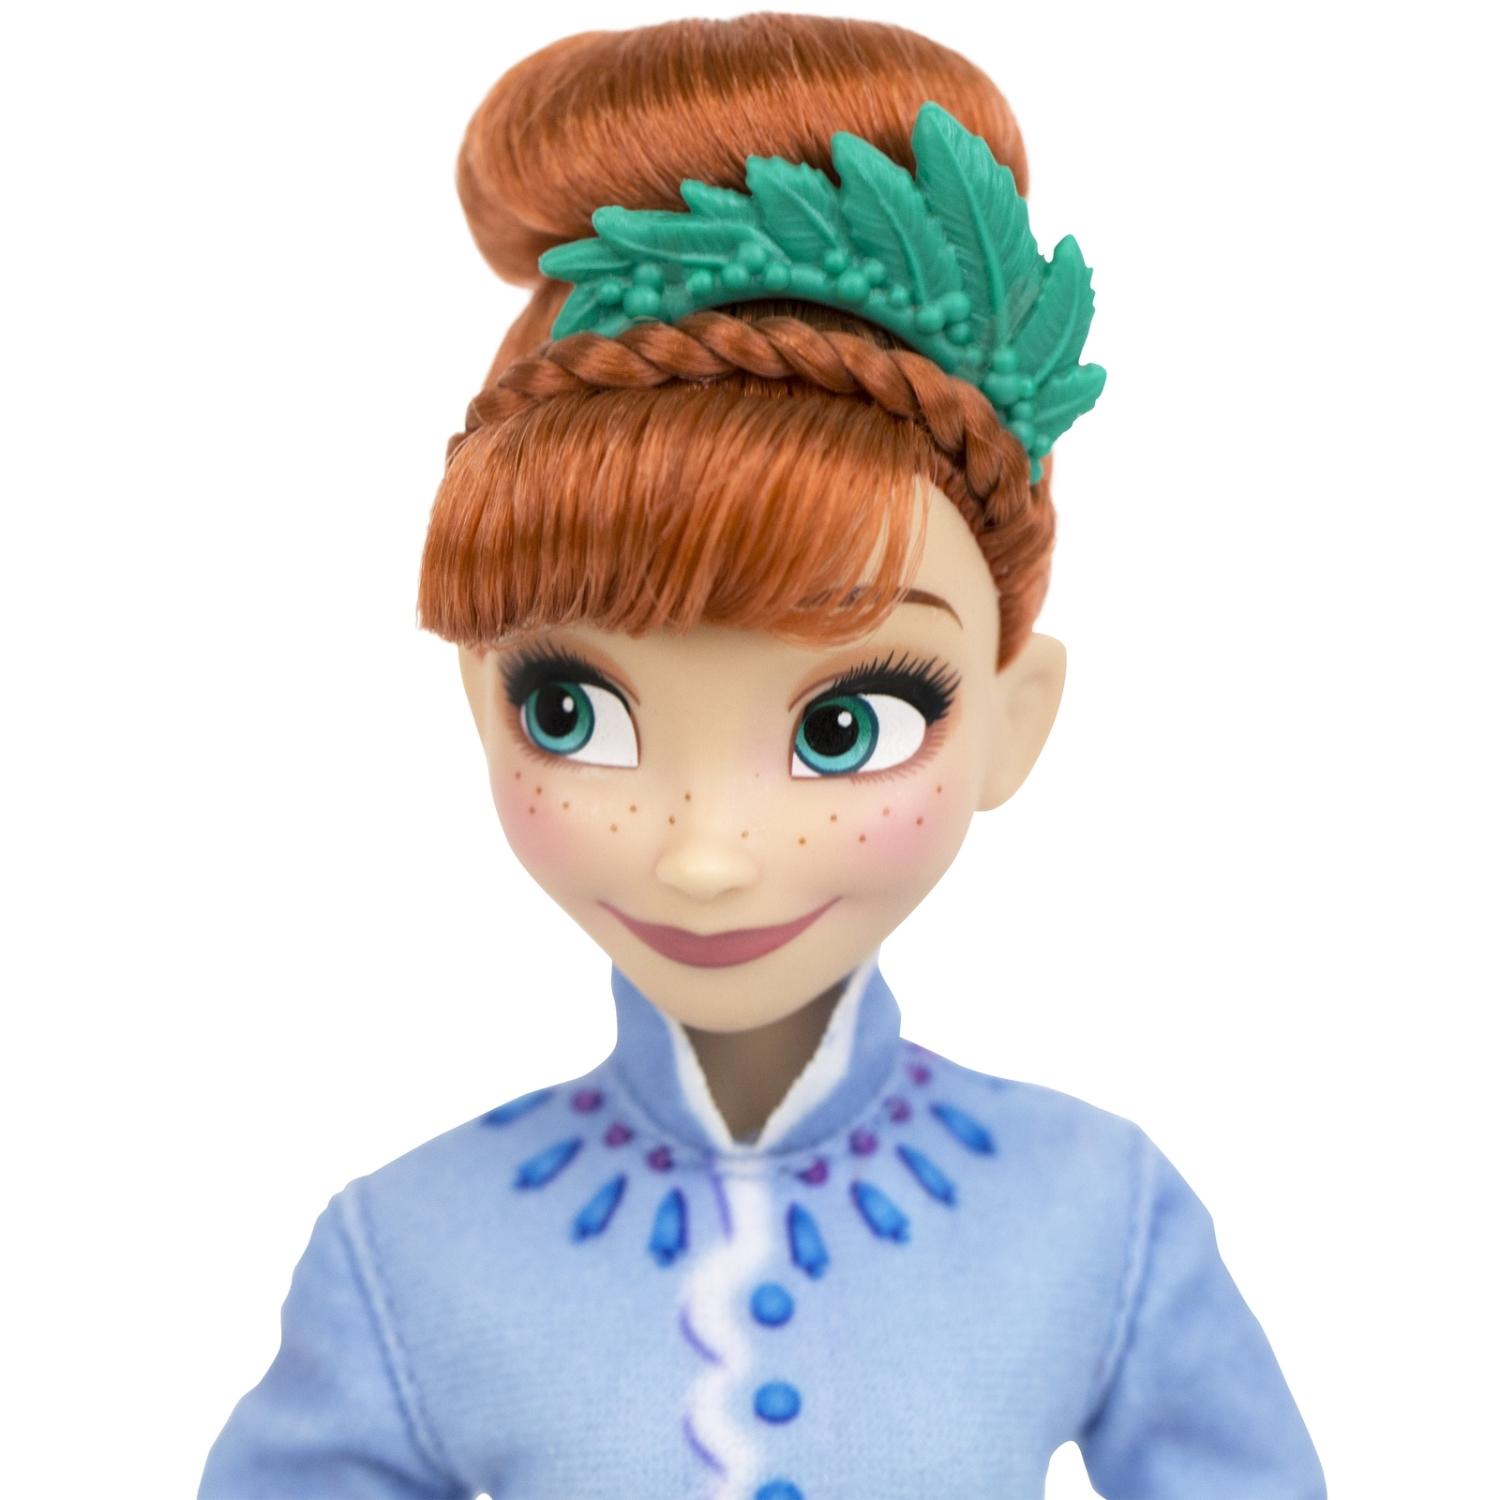 Кукла из серии Рождество с Олафом Disney Princess. Холодное Сердце: Анна, Эльза  